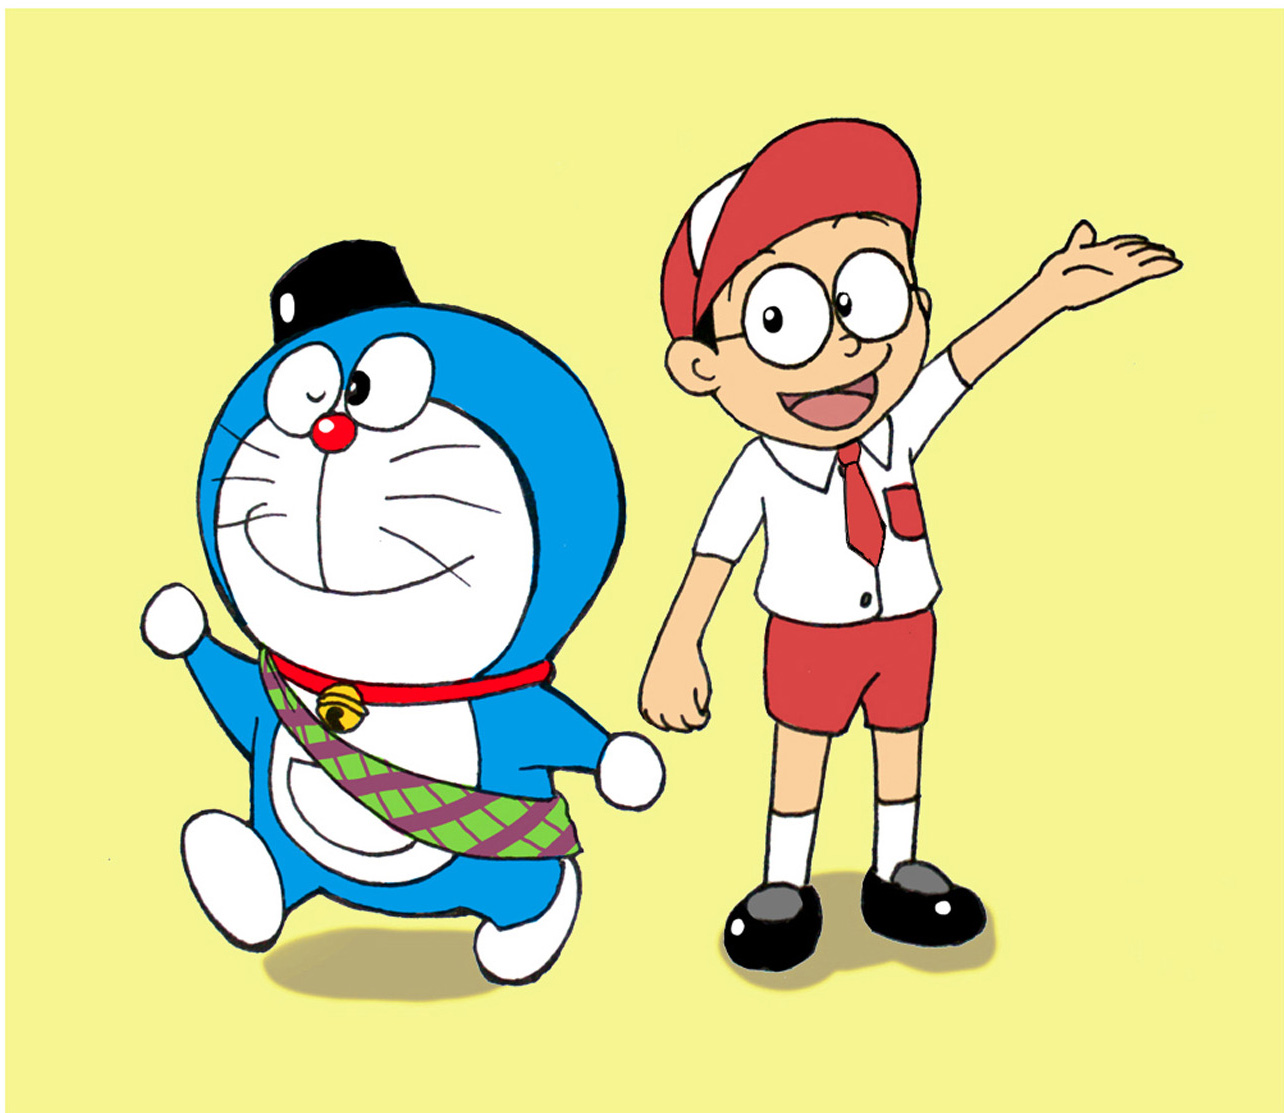  Gambar Doraemon Dan Teman Teman Toko FD Flashdisk Flashdrive